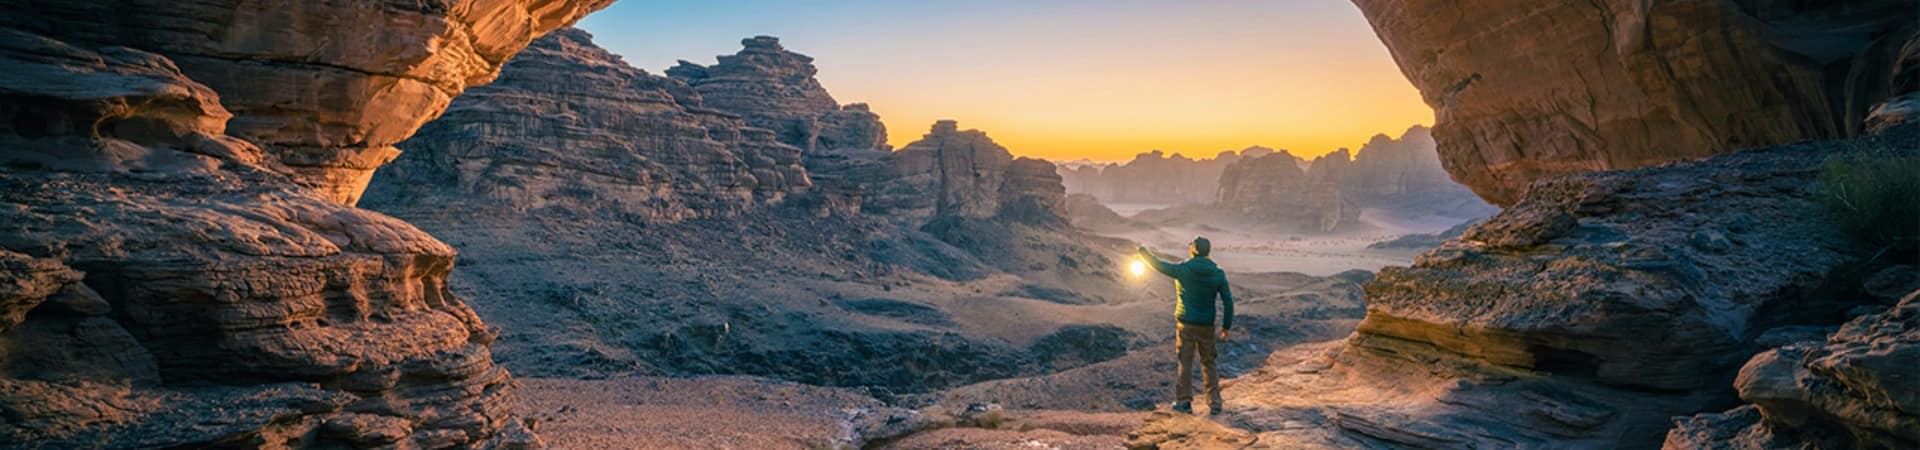 Arabia saudita hisma deserto vista